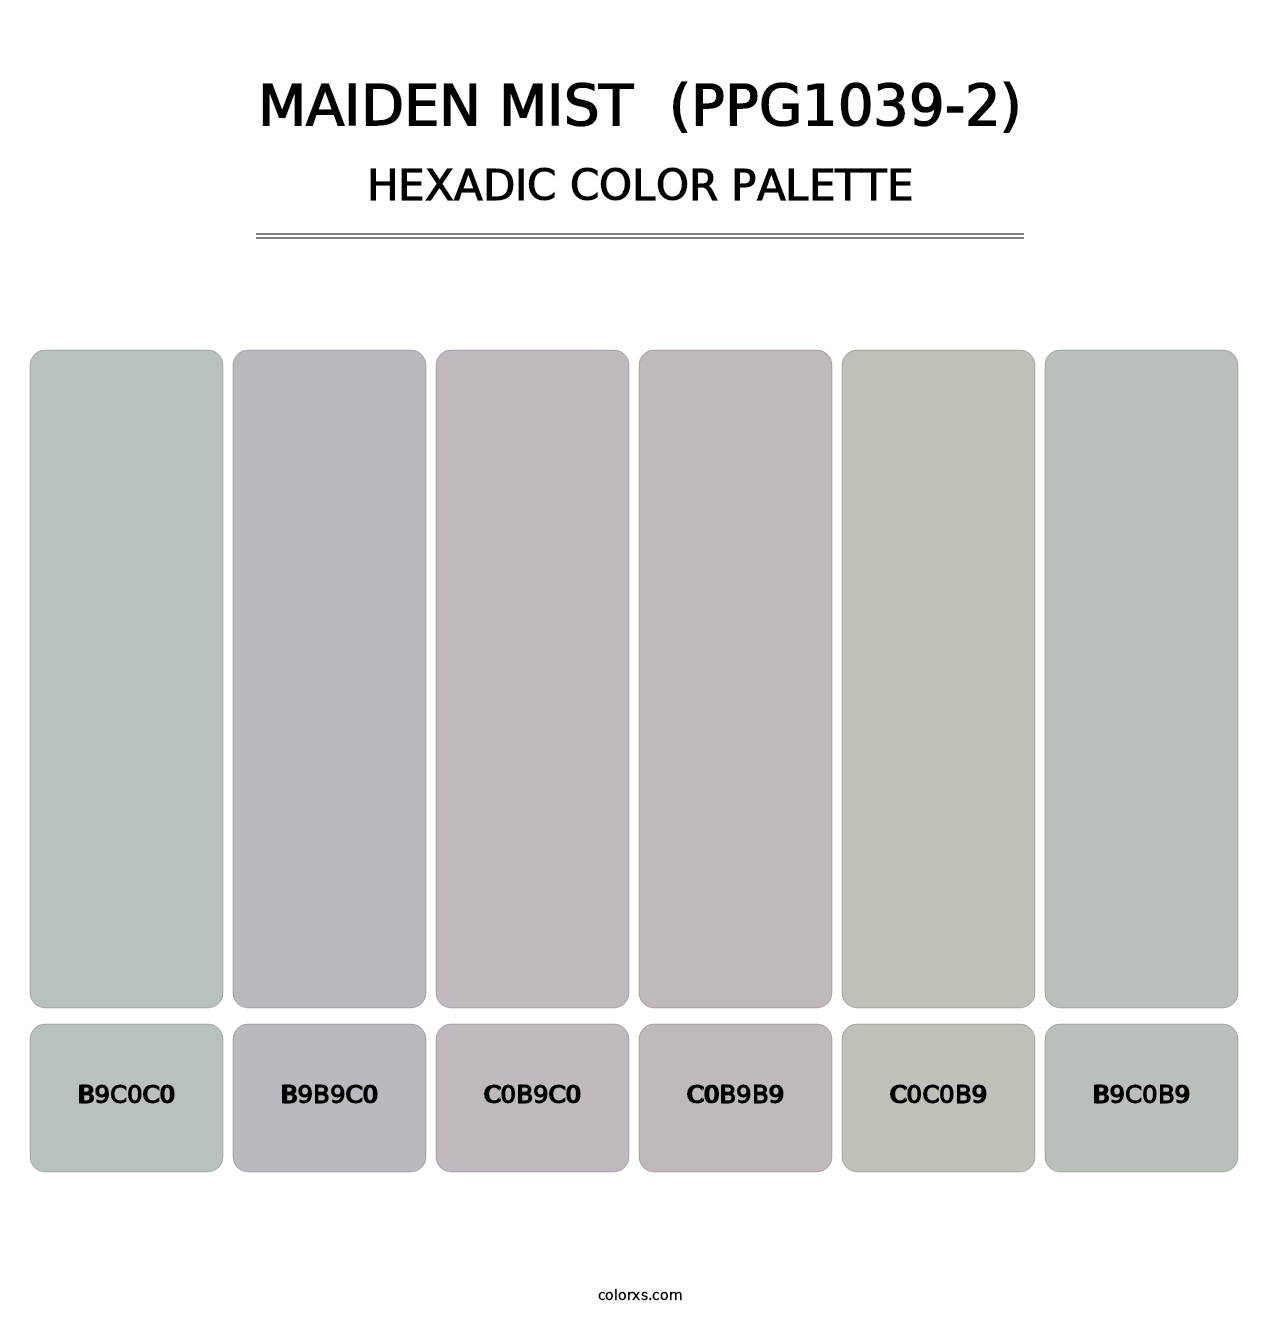 Maiden Mist  (PPG1039-2) - Hexadic Color Palette